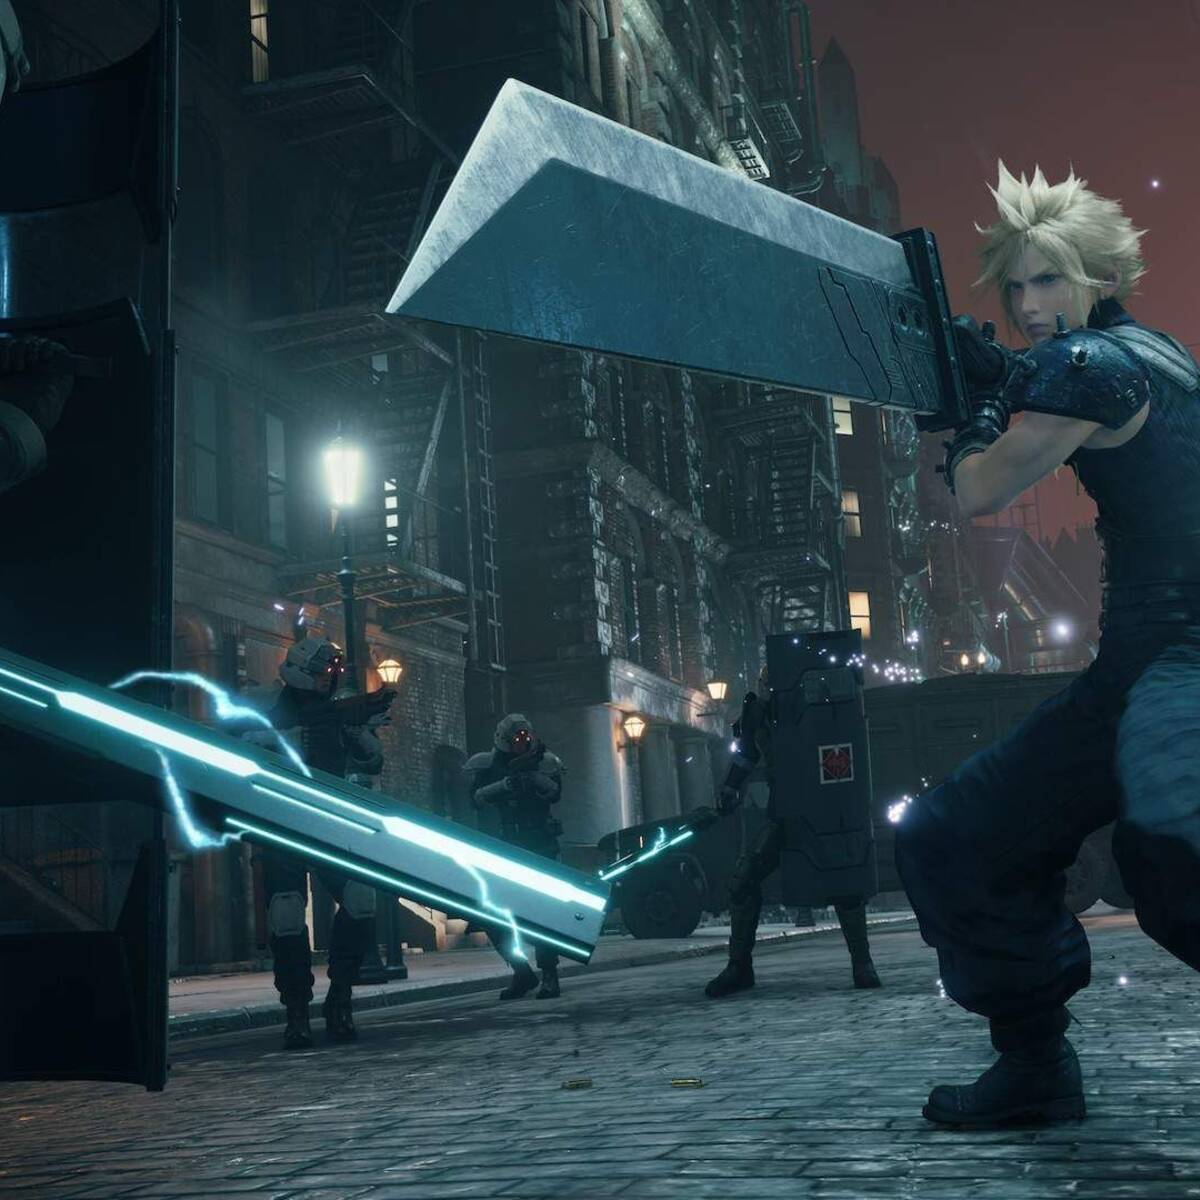 Final Fantasy VII Remake Intergrade confirma sus requisitos en PC